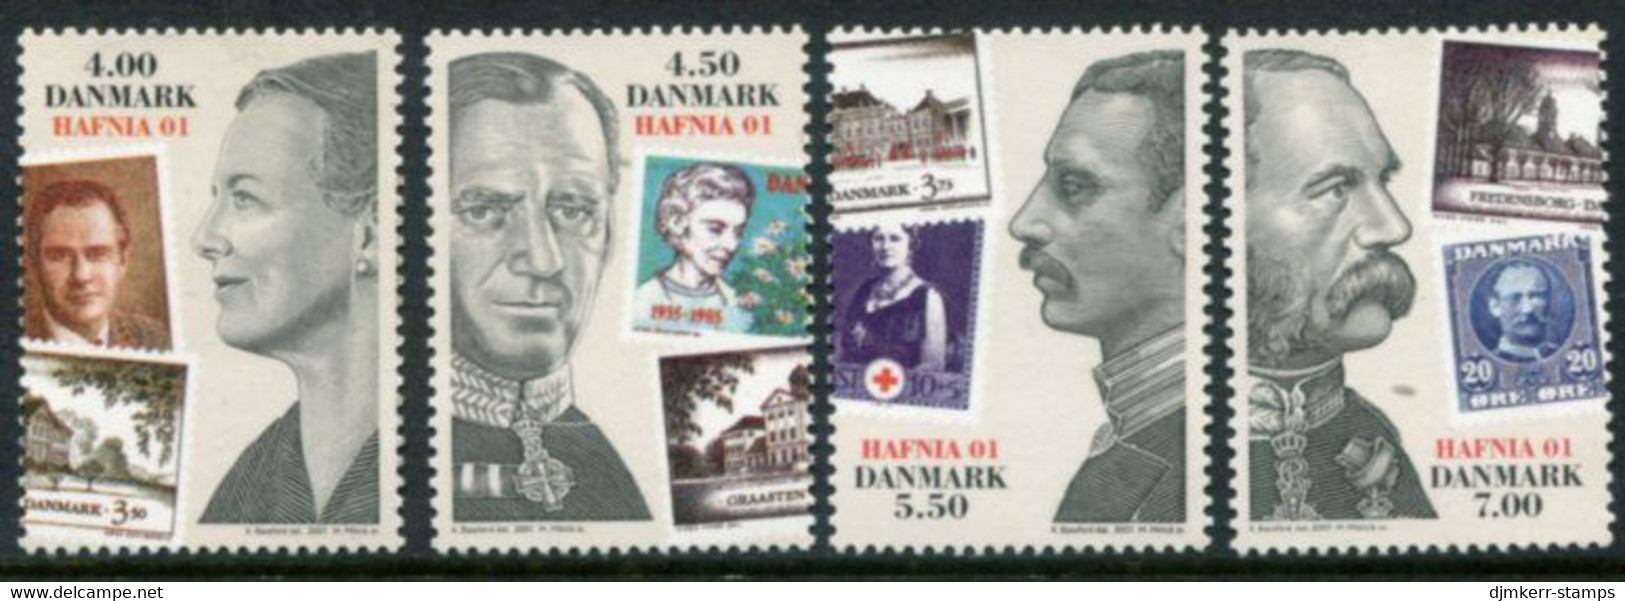 DENMARK 2001 HAFNIA'01 Stamp Exhibition MNH / **.. Michel 1287-90 - Ungebraucht